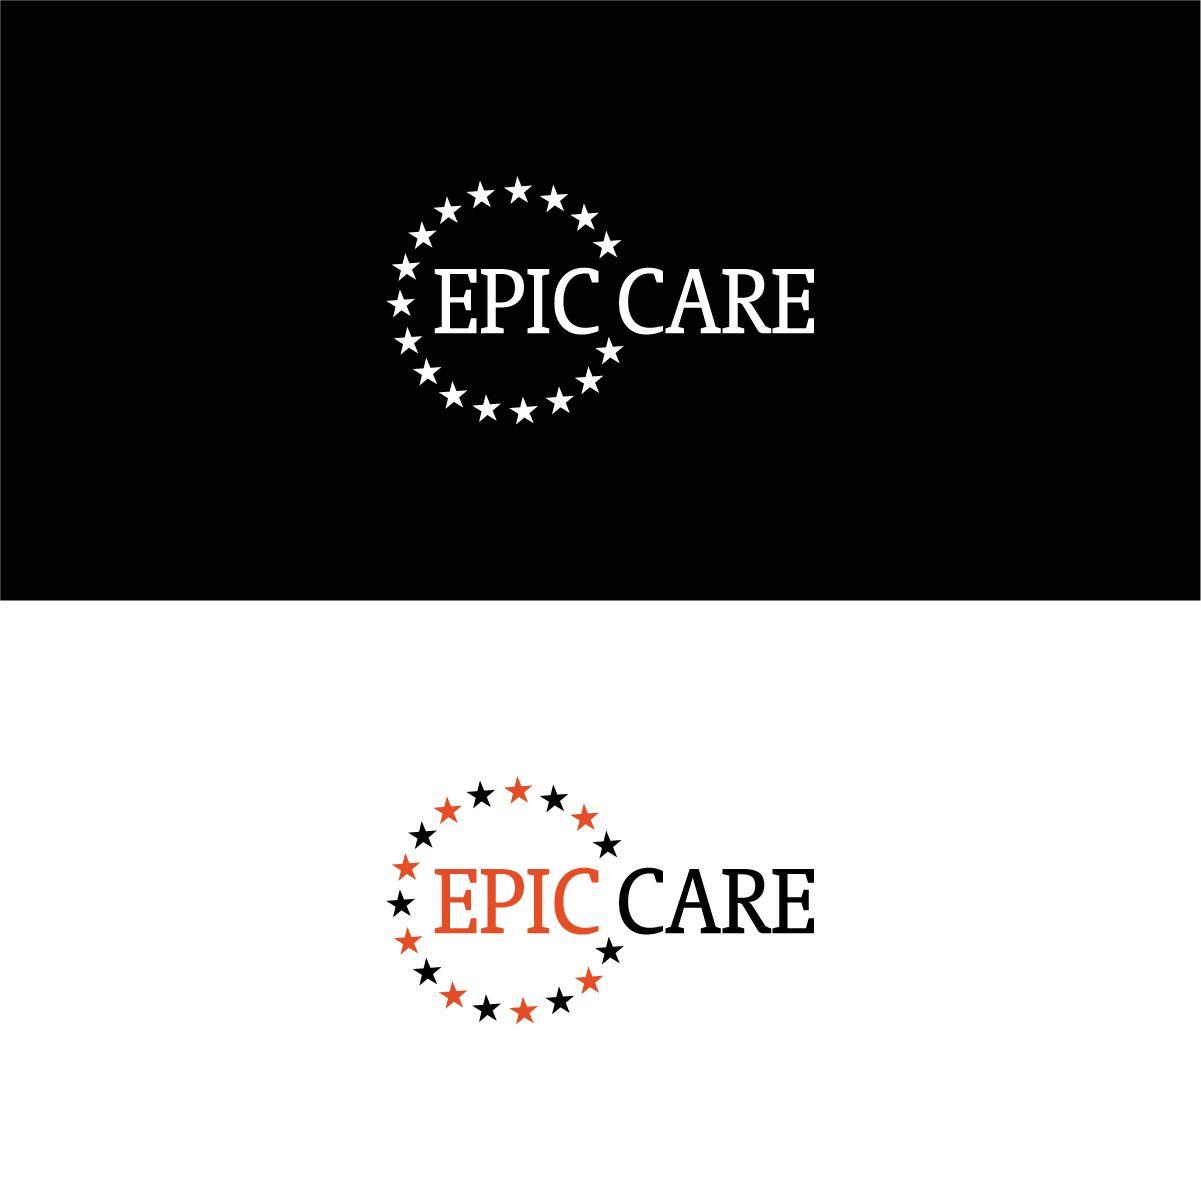 EpicCare Logo - Professional, Elegant, Medicare Logo Design for EPIC